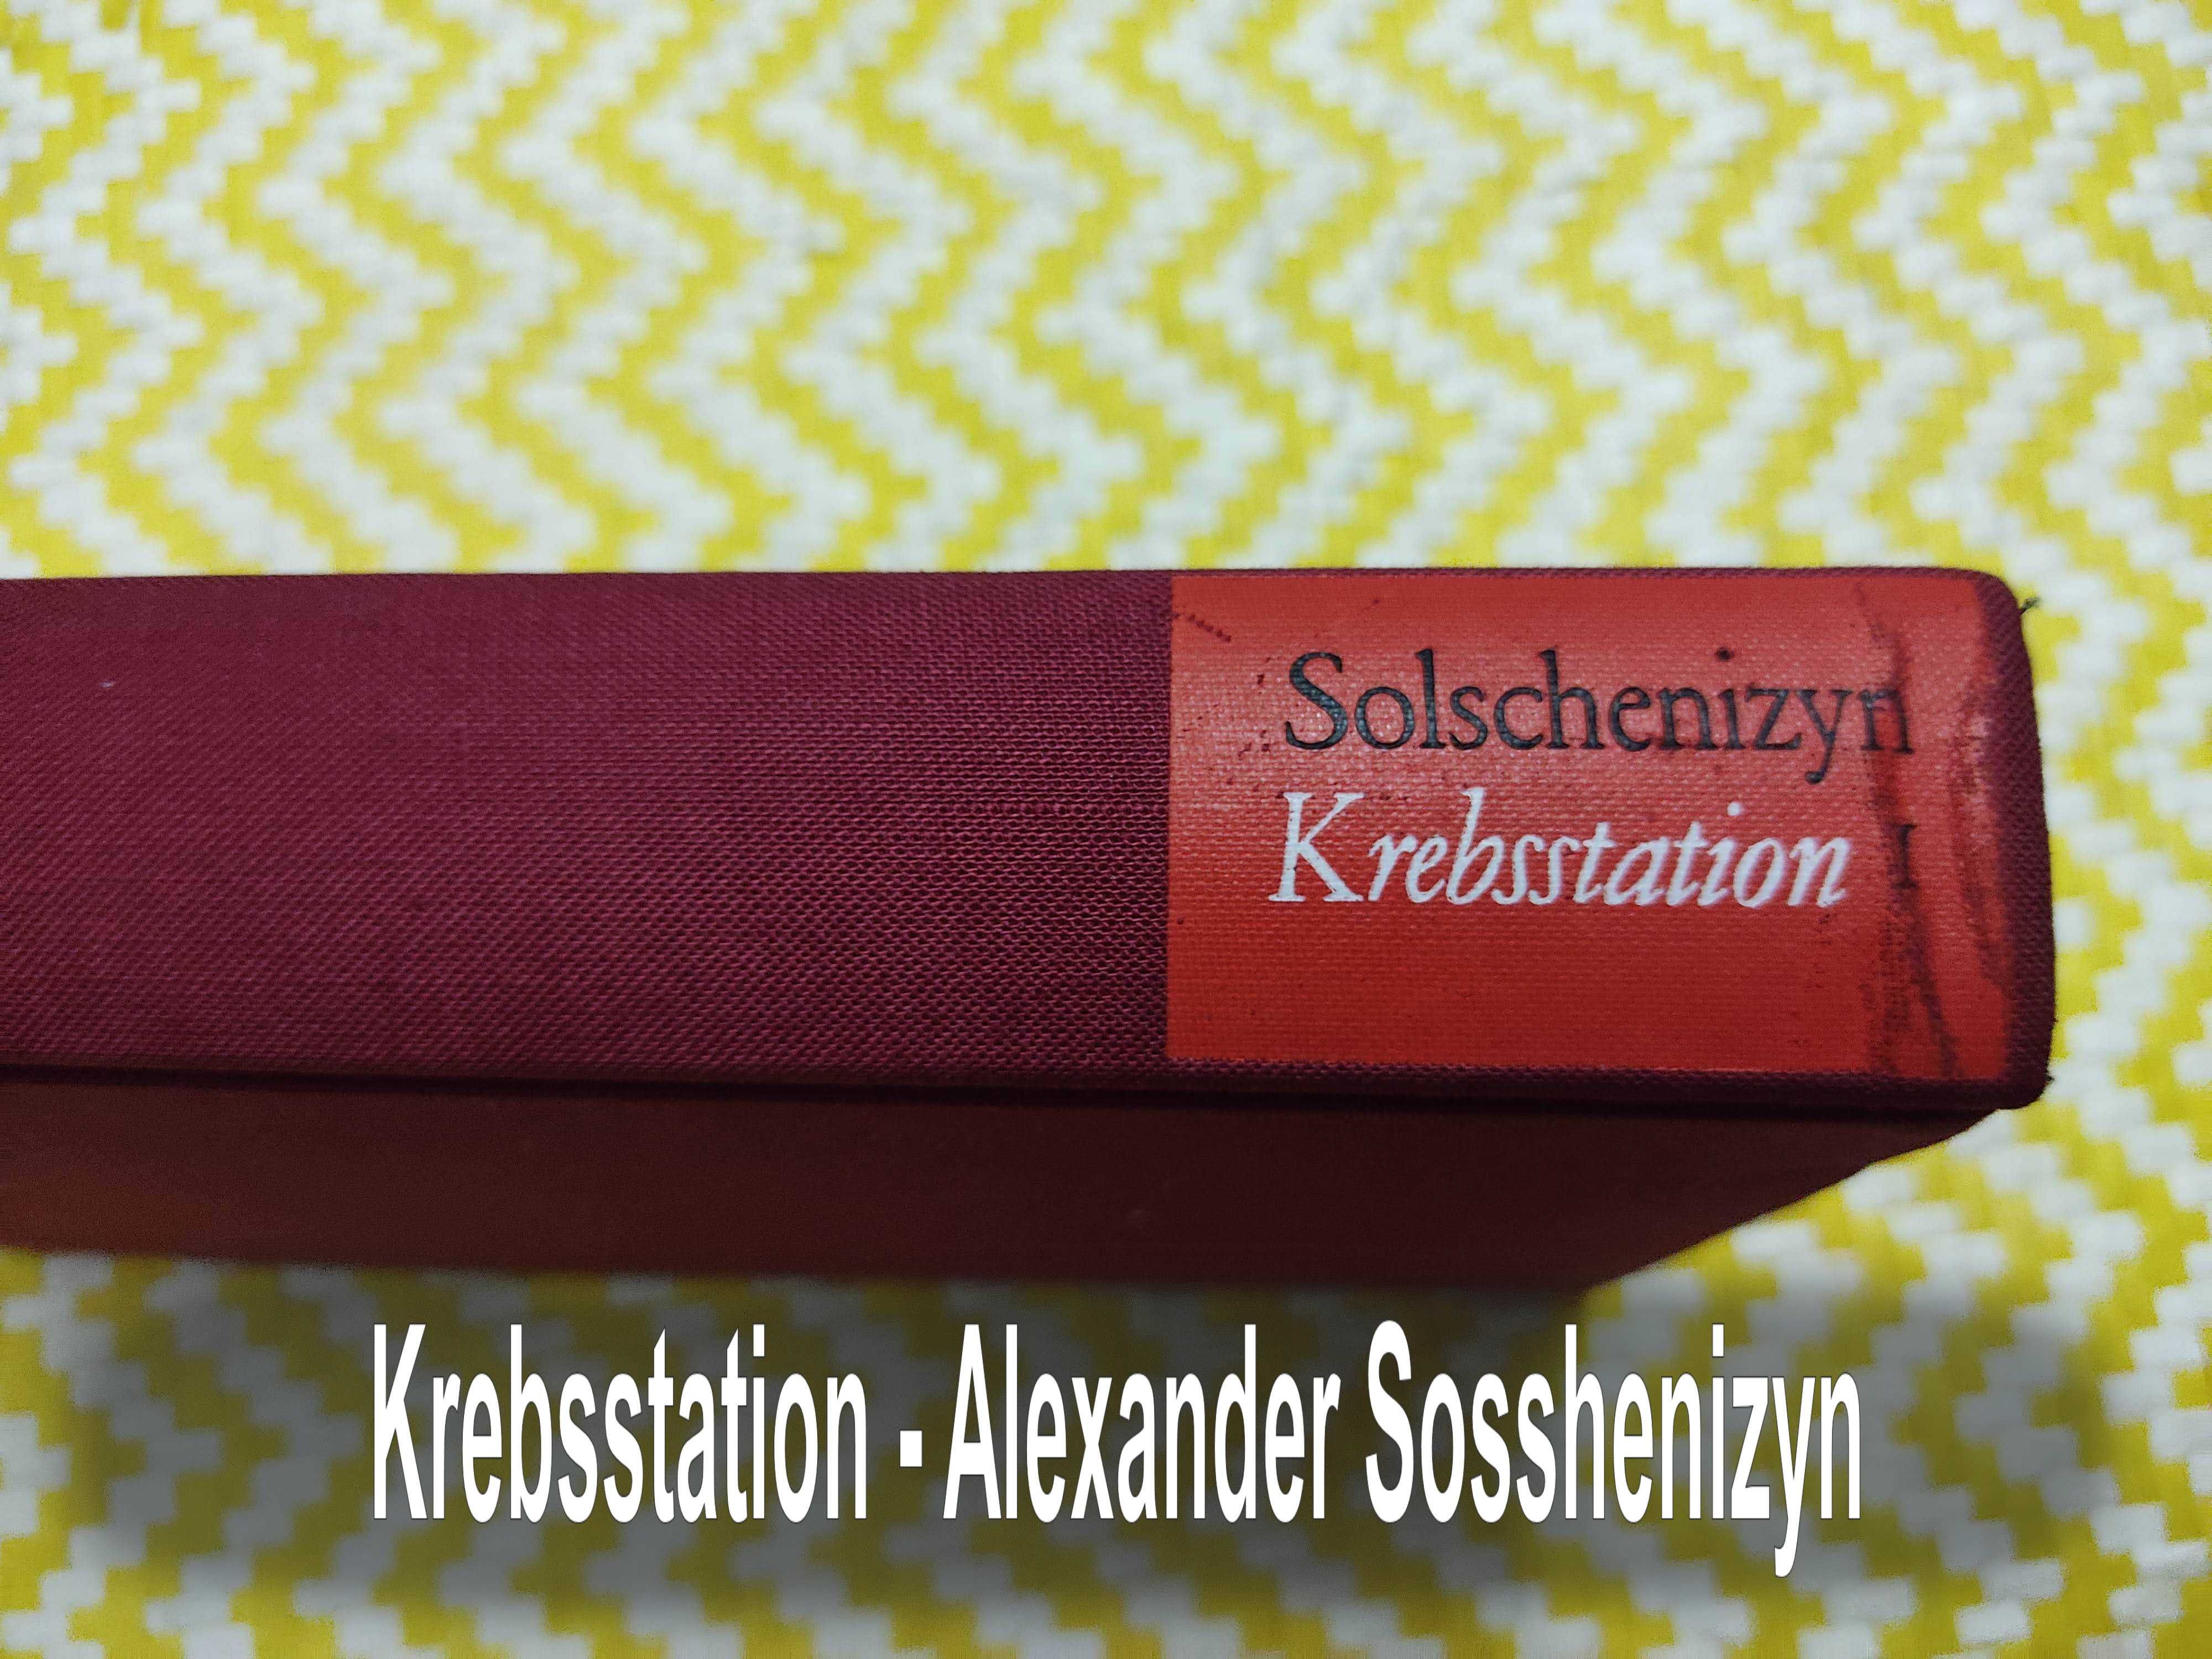 Krebsstation - Alexander sosshenizyn